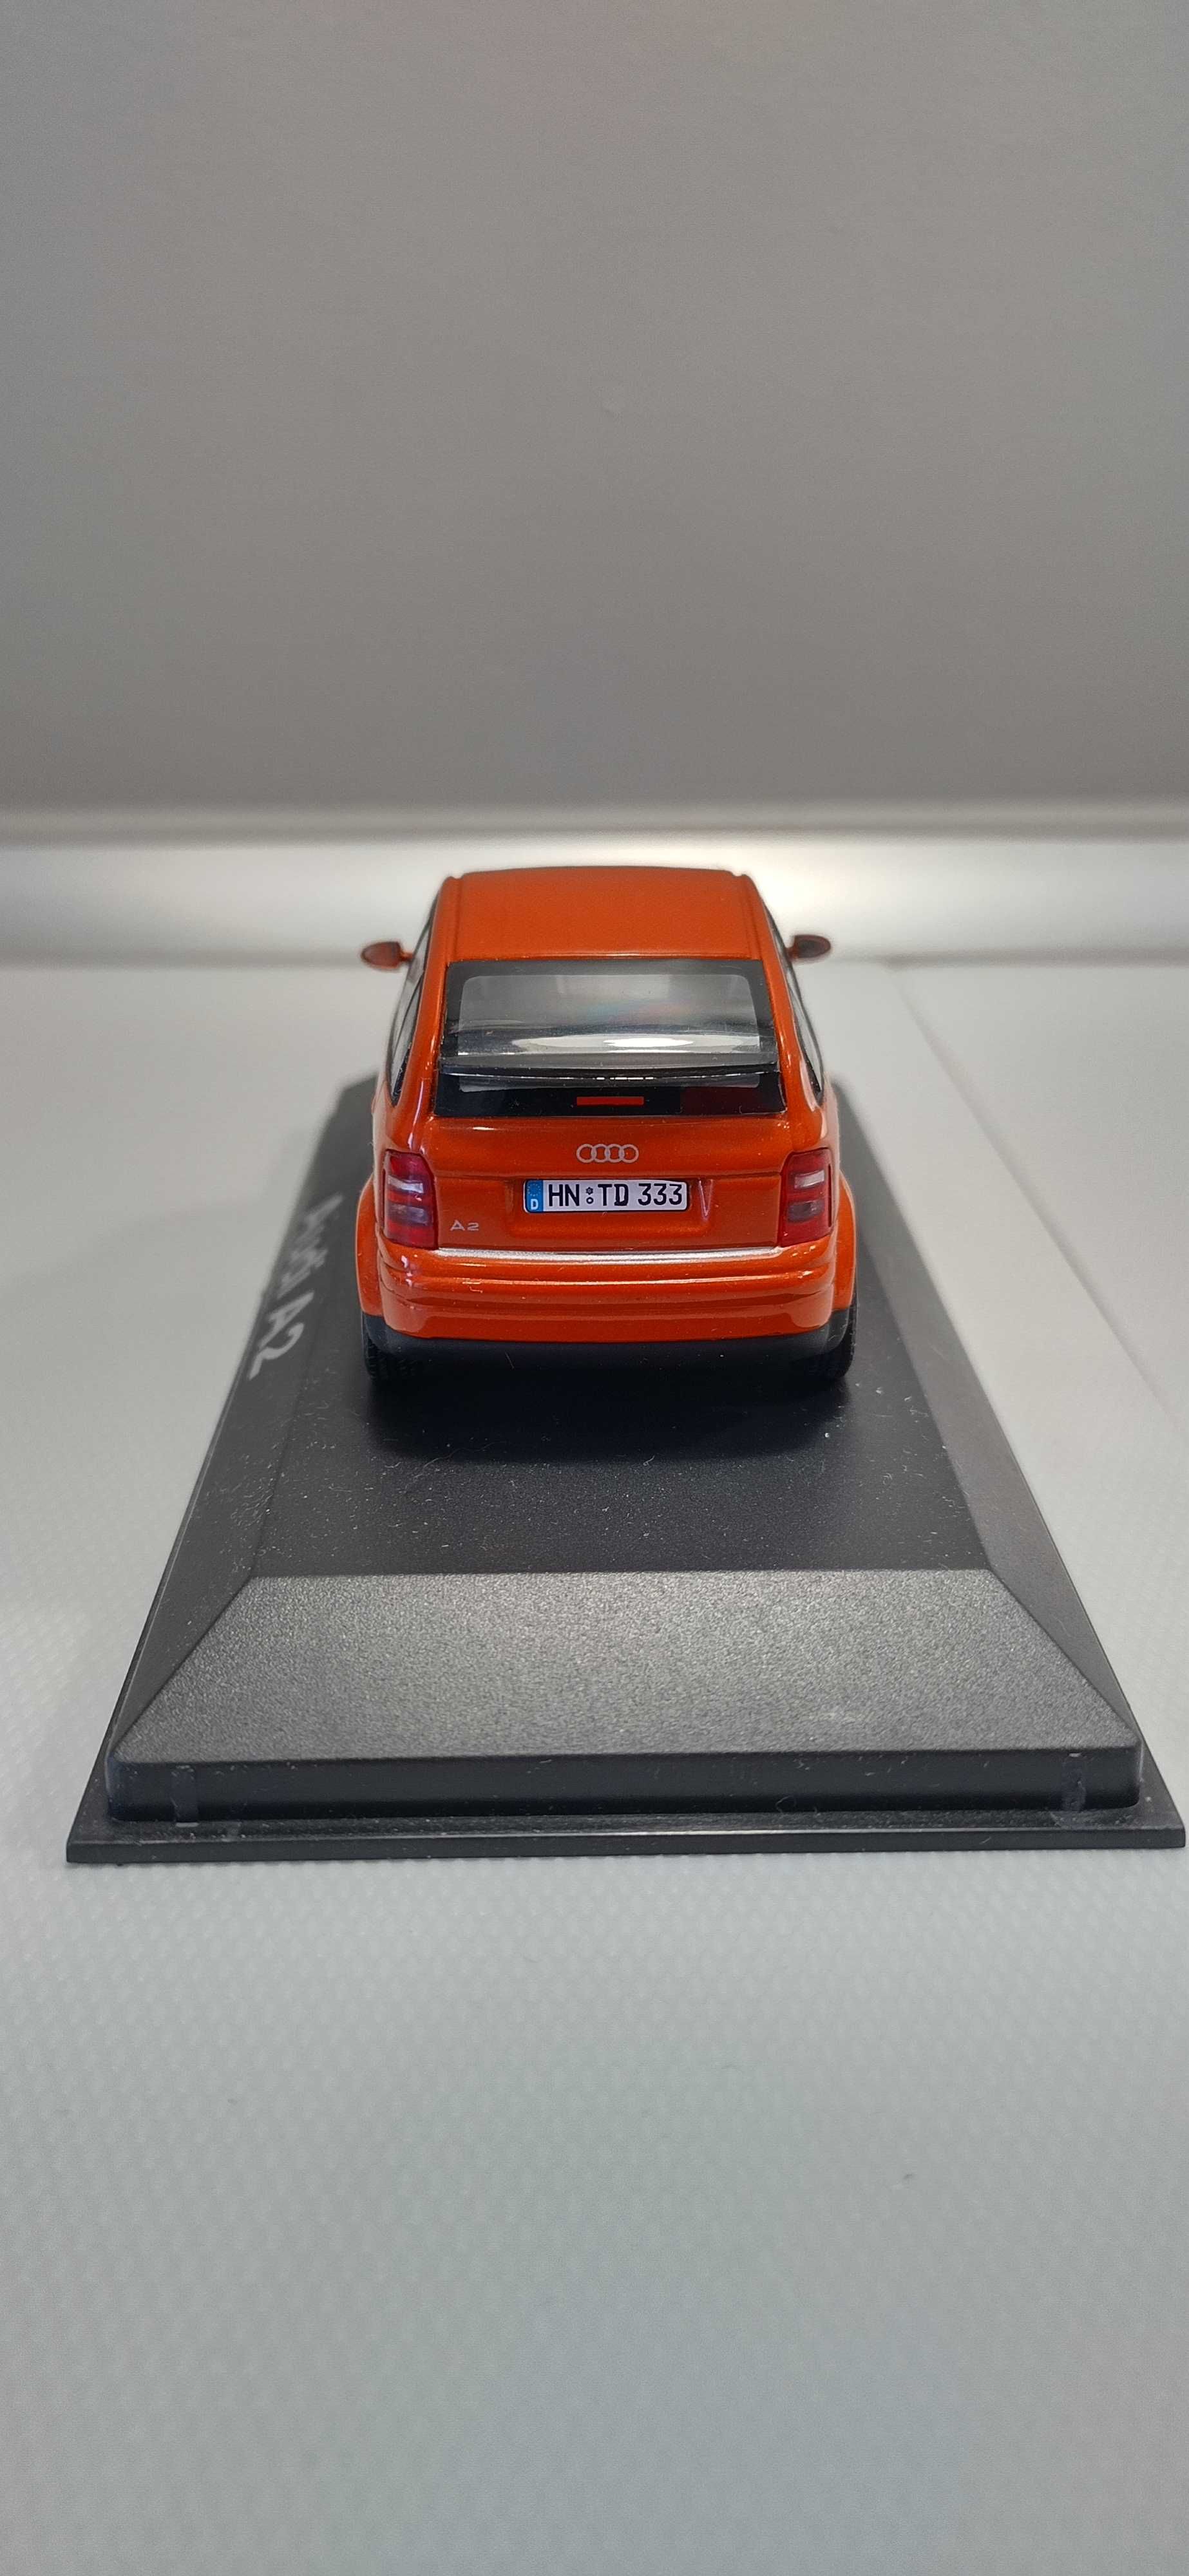 Audi A2 Minichamps 1:43